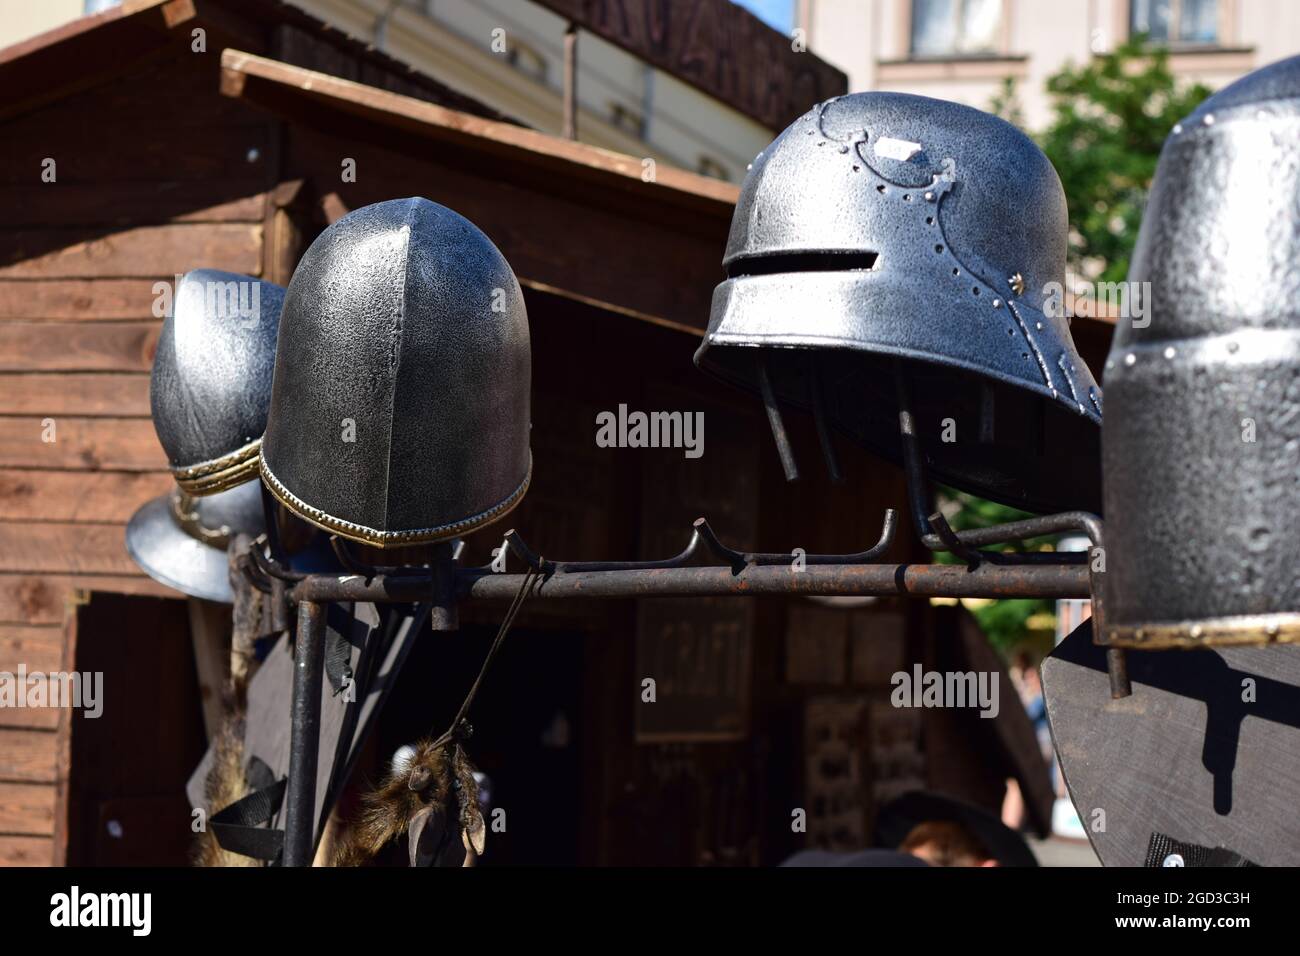 CRACOVIE, POLOGNE - 16 août 2014 : un stand de smith noir avec des casques métalliques lors d'un festival traditionnel à Cracovie, en Pologne Banque D'Images